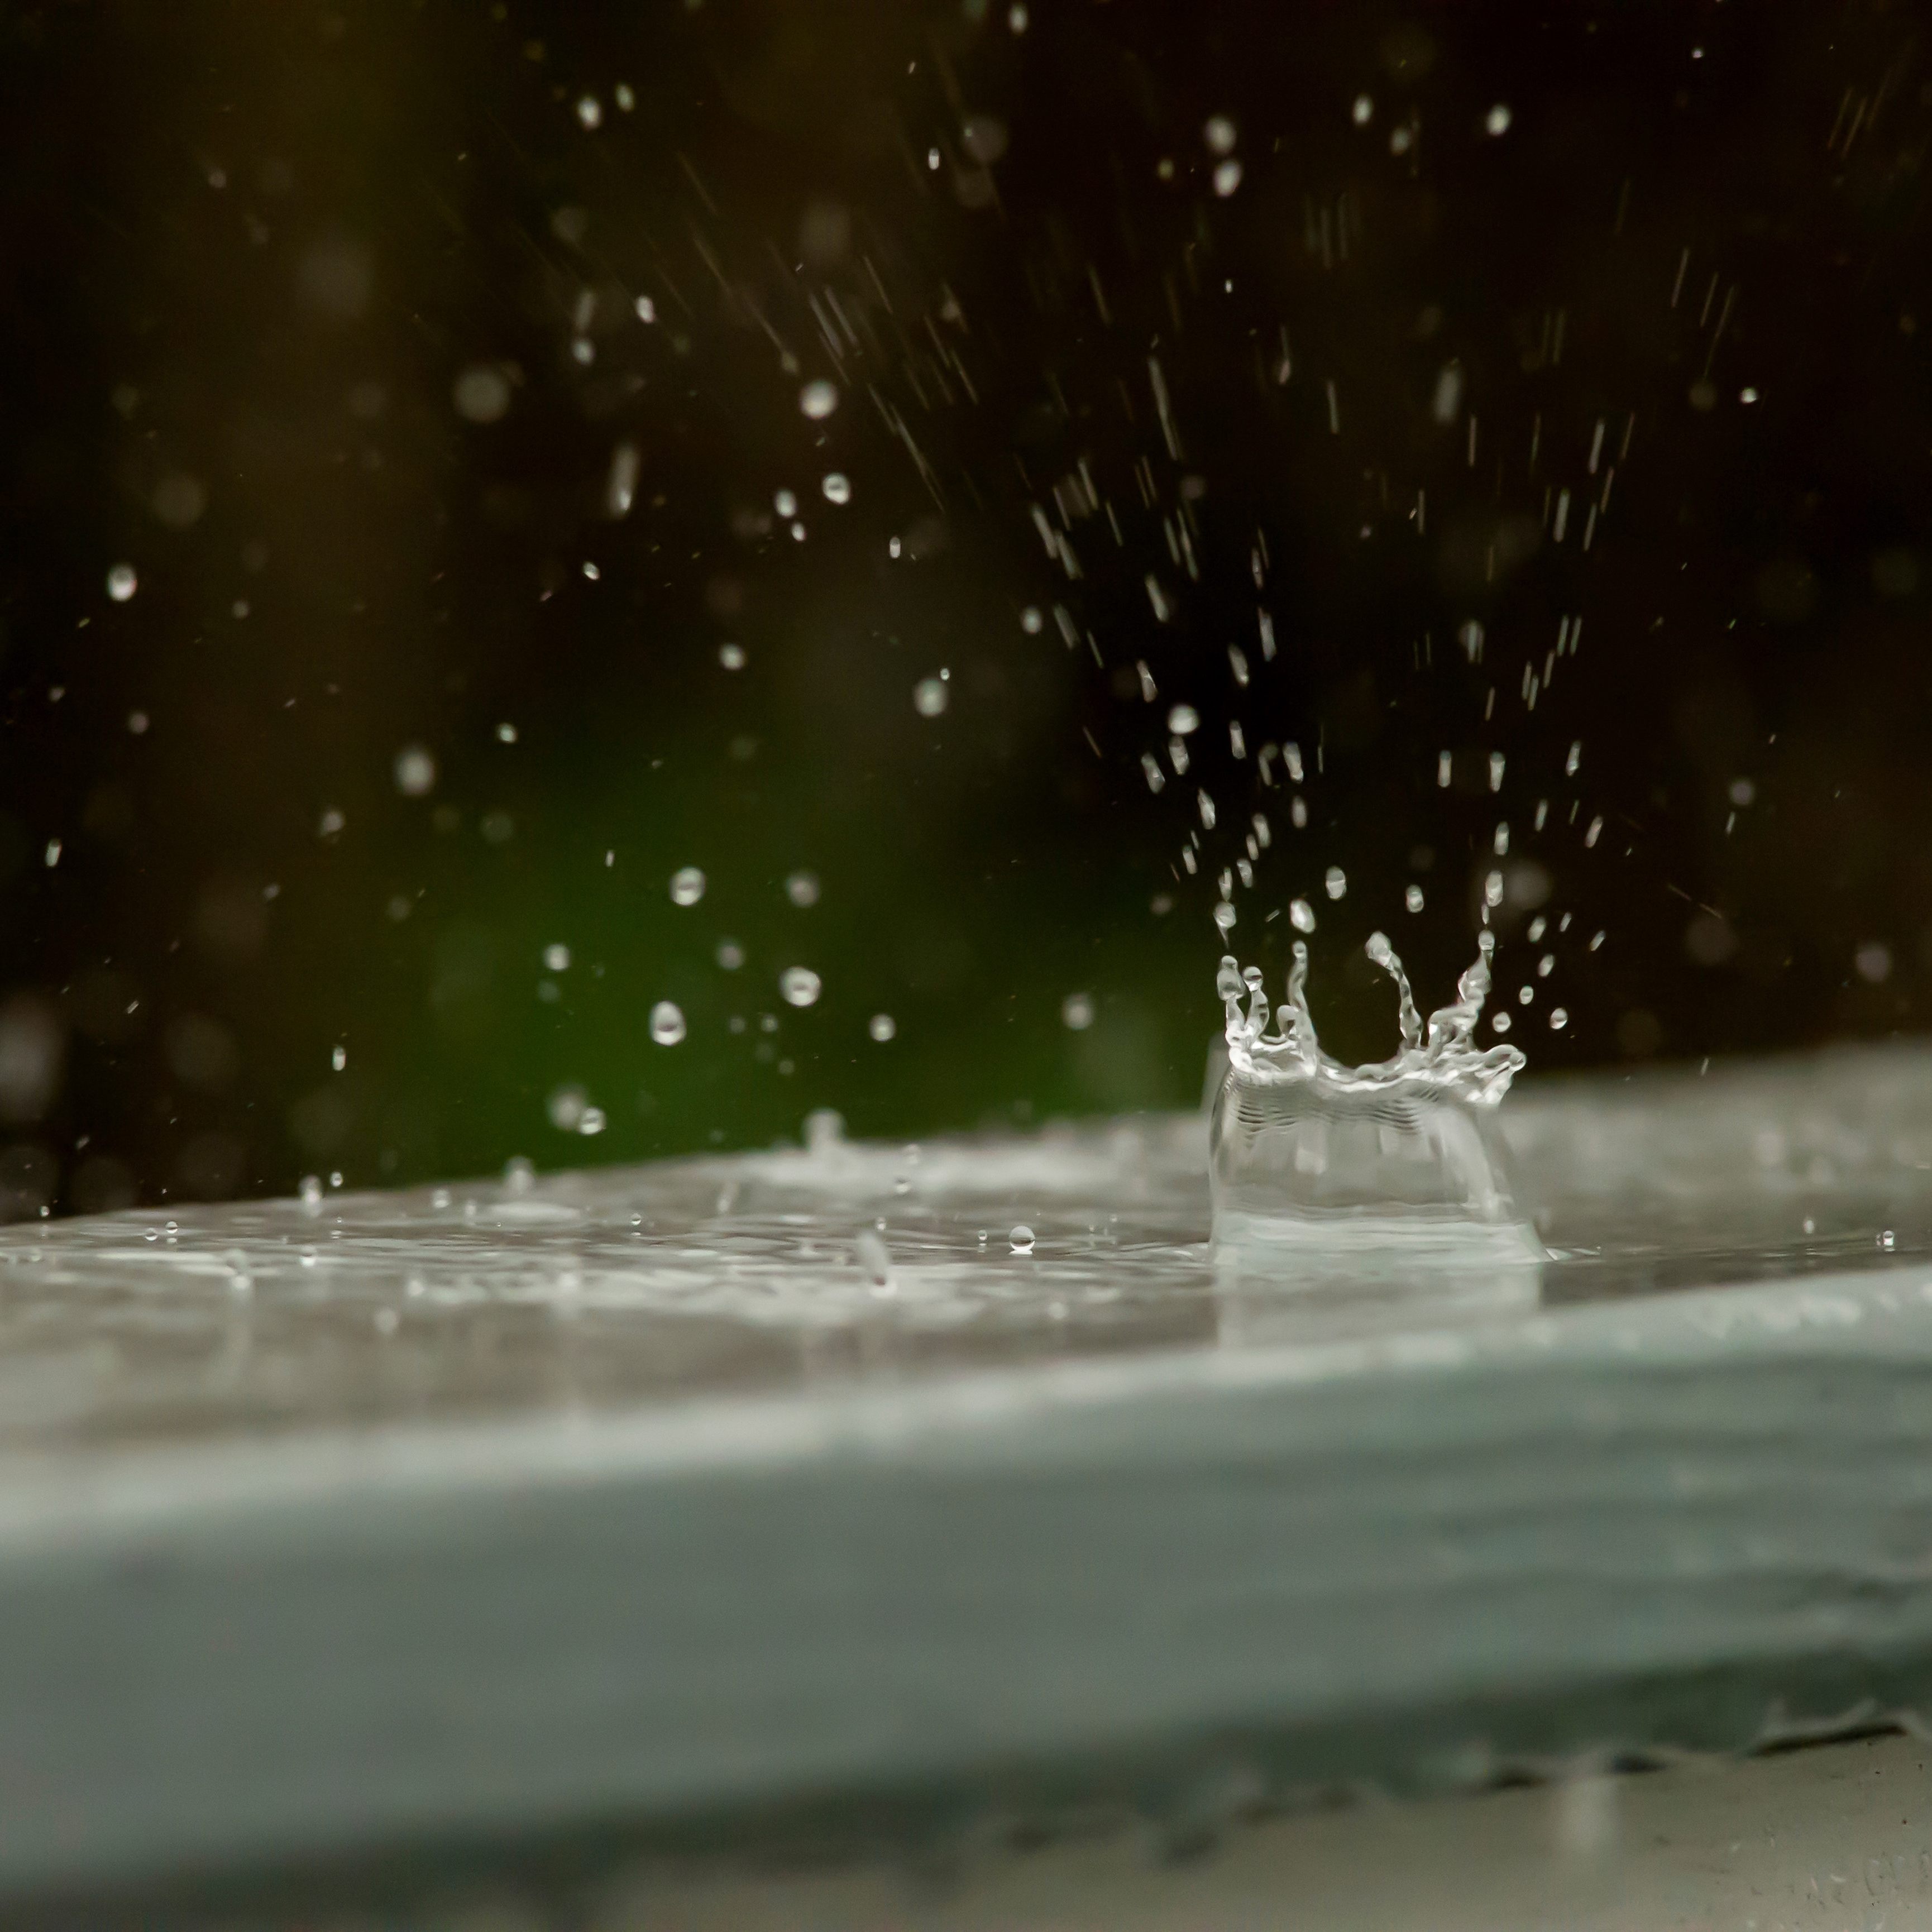 raindrop in water